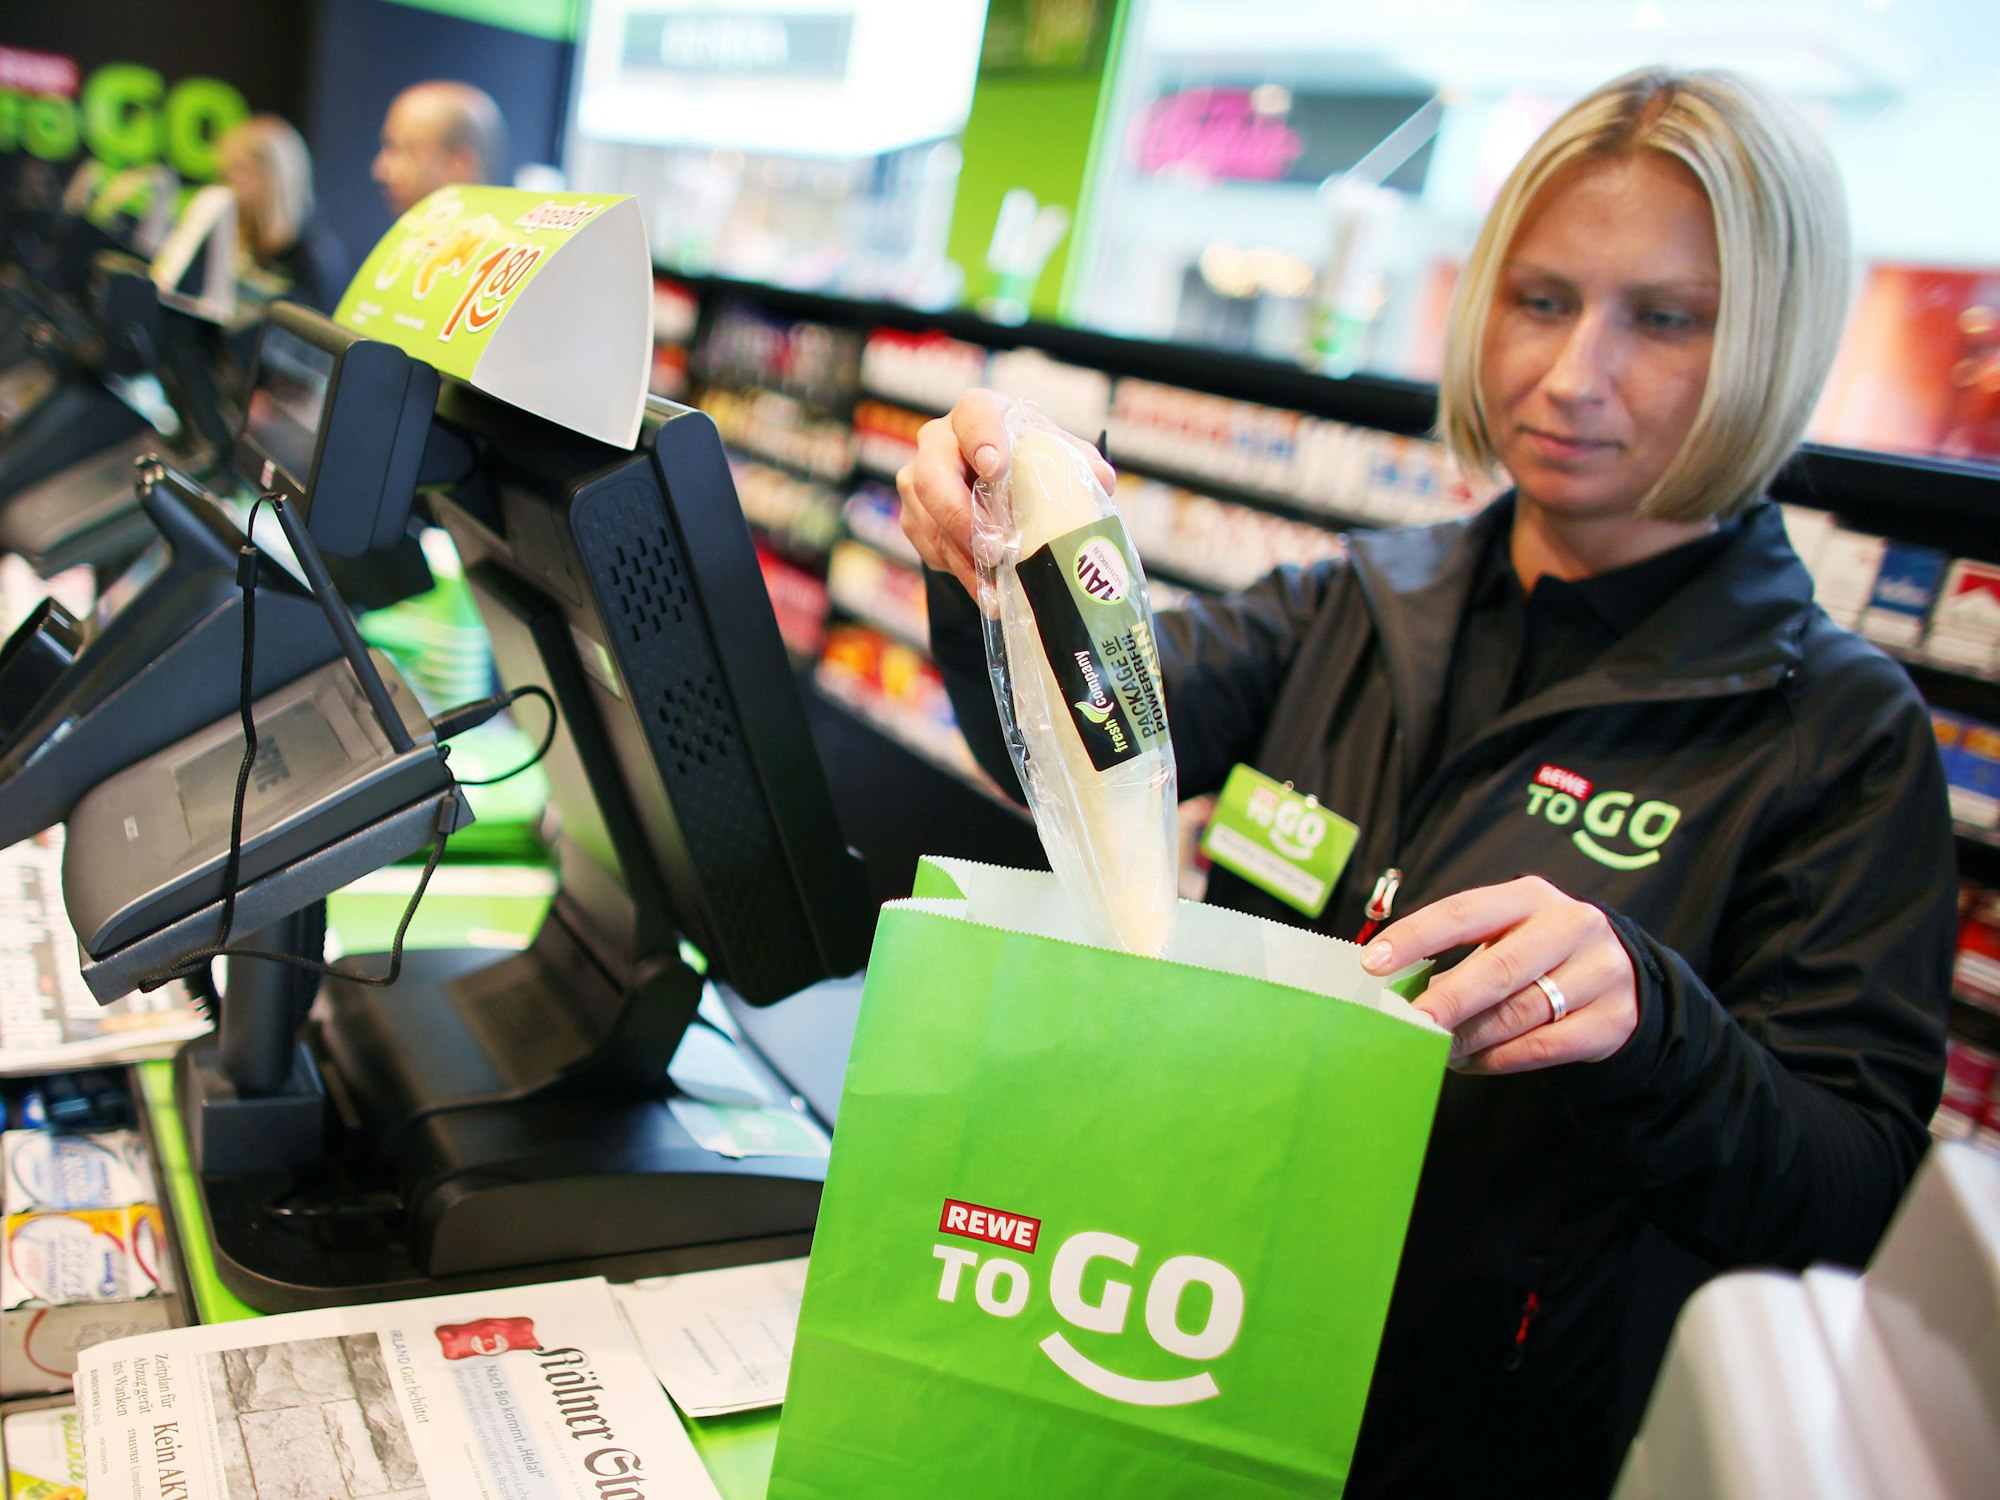 Das Symbolfoto aus dem Jahr 2011 zeigt eine blonde Kassiererin einer Rewe-To-Go-Filiale. Die Frau steht hinter der Kasse und packt Produkte in eine grüne Papiertüte.